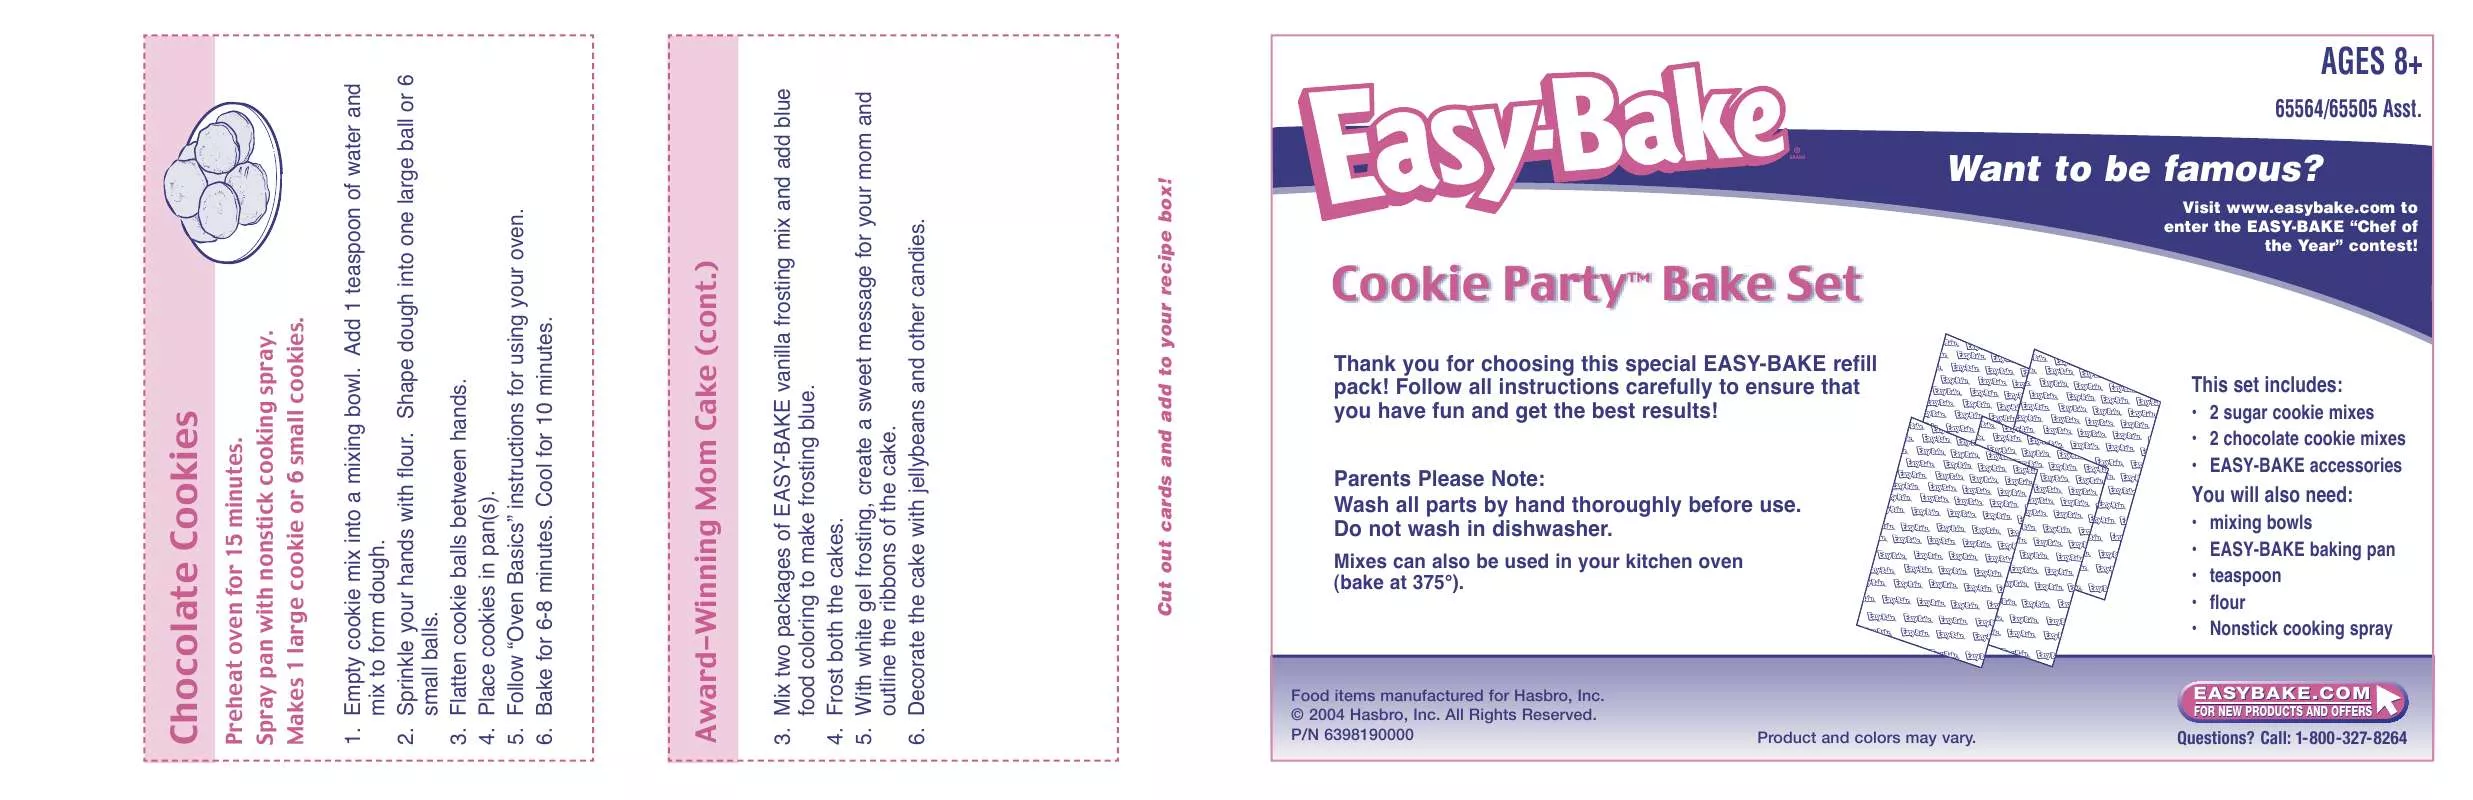 Mode d'emploi HASBRO EASY BAKE COOKIE PARTY BAKE SET 2004